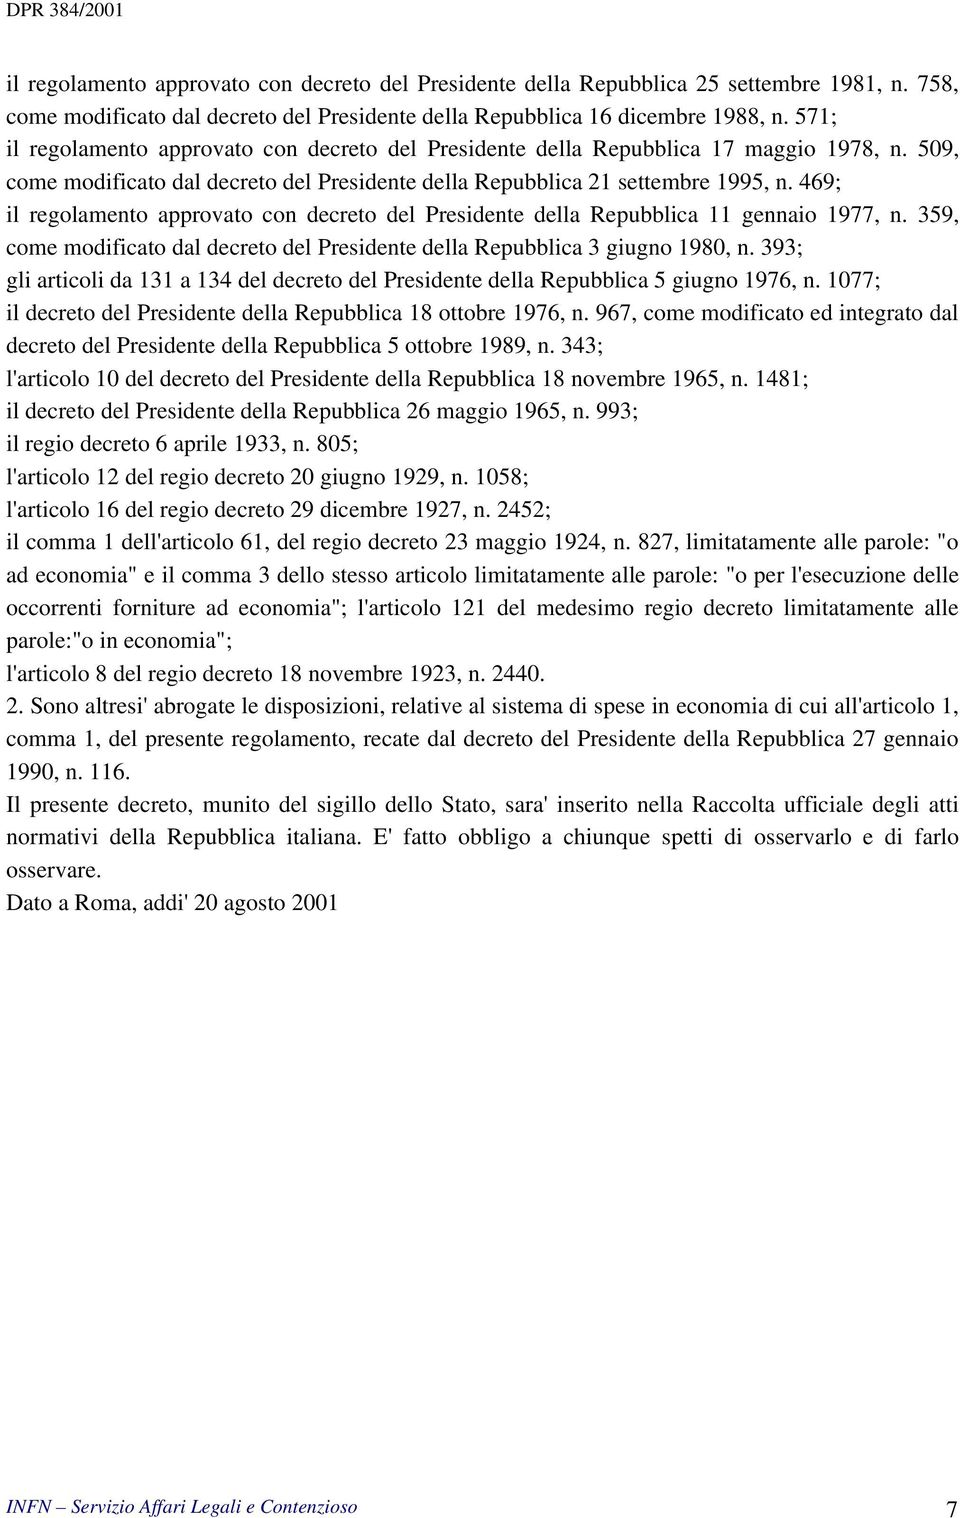 469; il regolamento approvato con decreto del Presidente della Repubblica 11 gennaio 1977, n. 359, come modificato dal decreto del Presidente della Repubblica 3 giugno 1980, n.